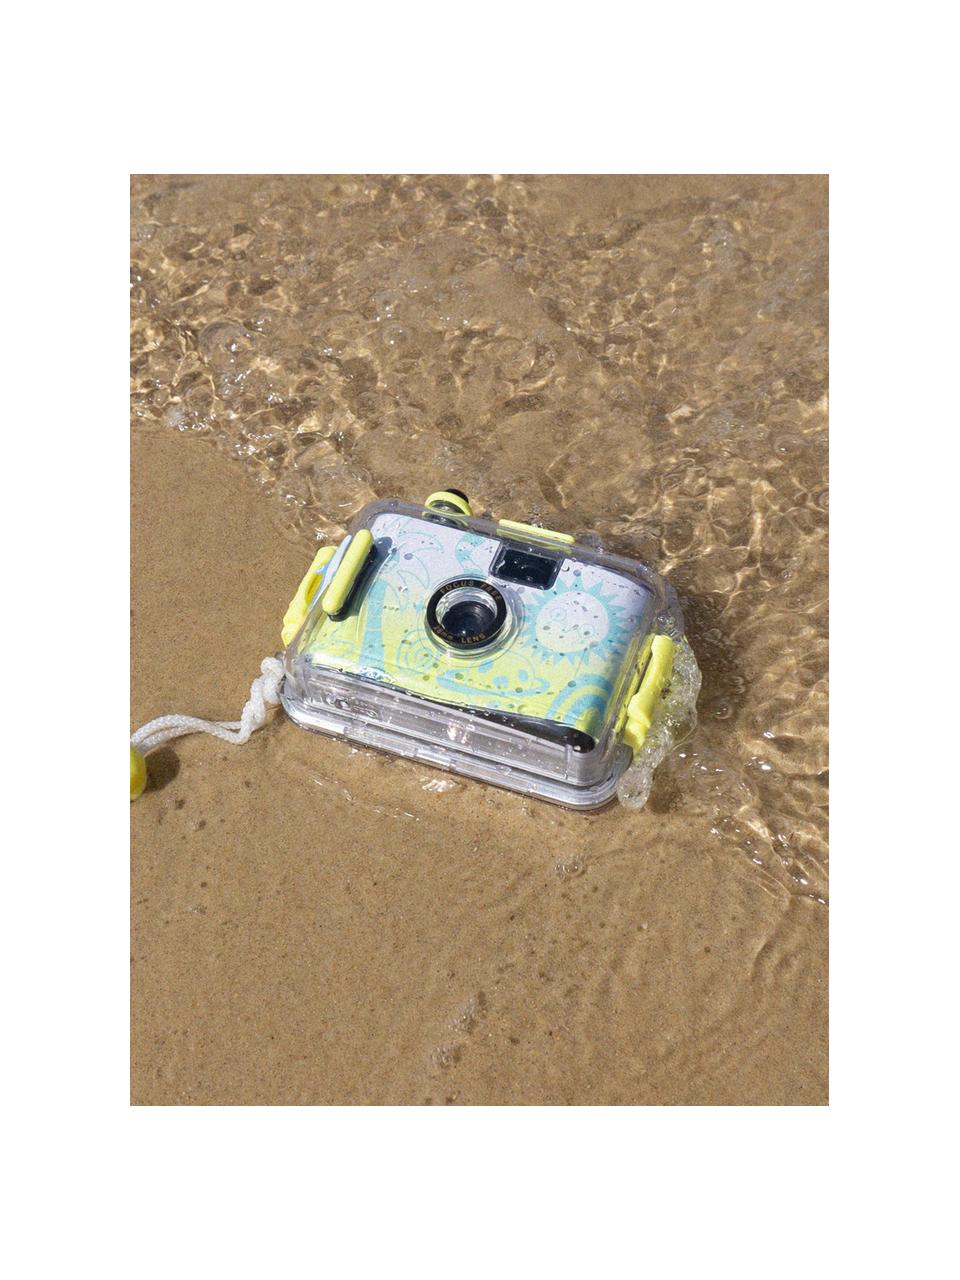 Onderwatercamera Sea Kids met waterdichte behuizing, ABS-kunststof, Gebroken wit, turkooisgroen, lichtgeel, Ø 15 x H 11 cm